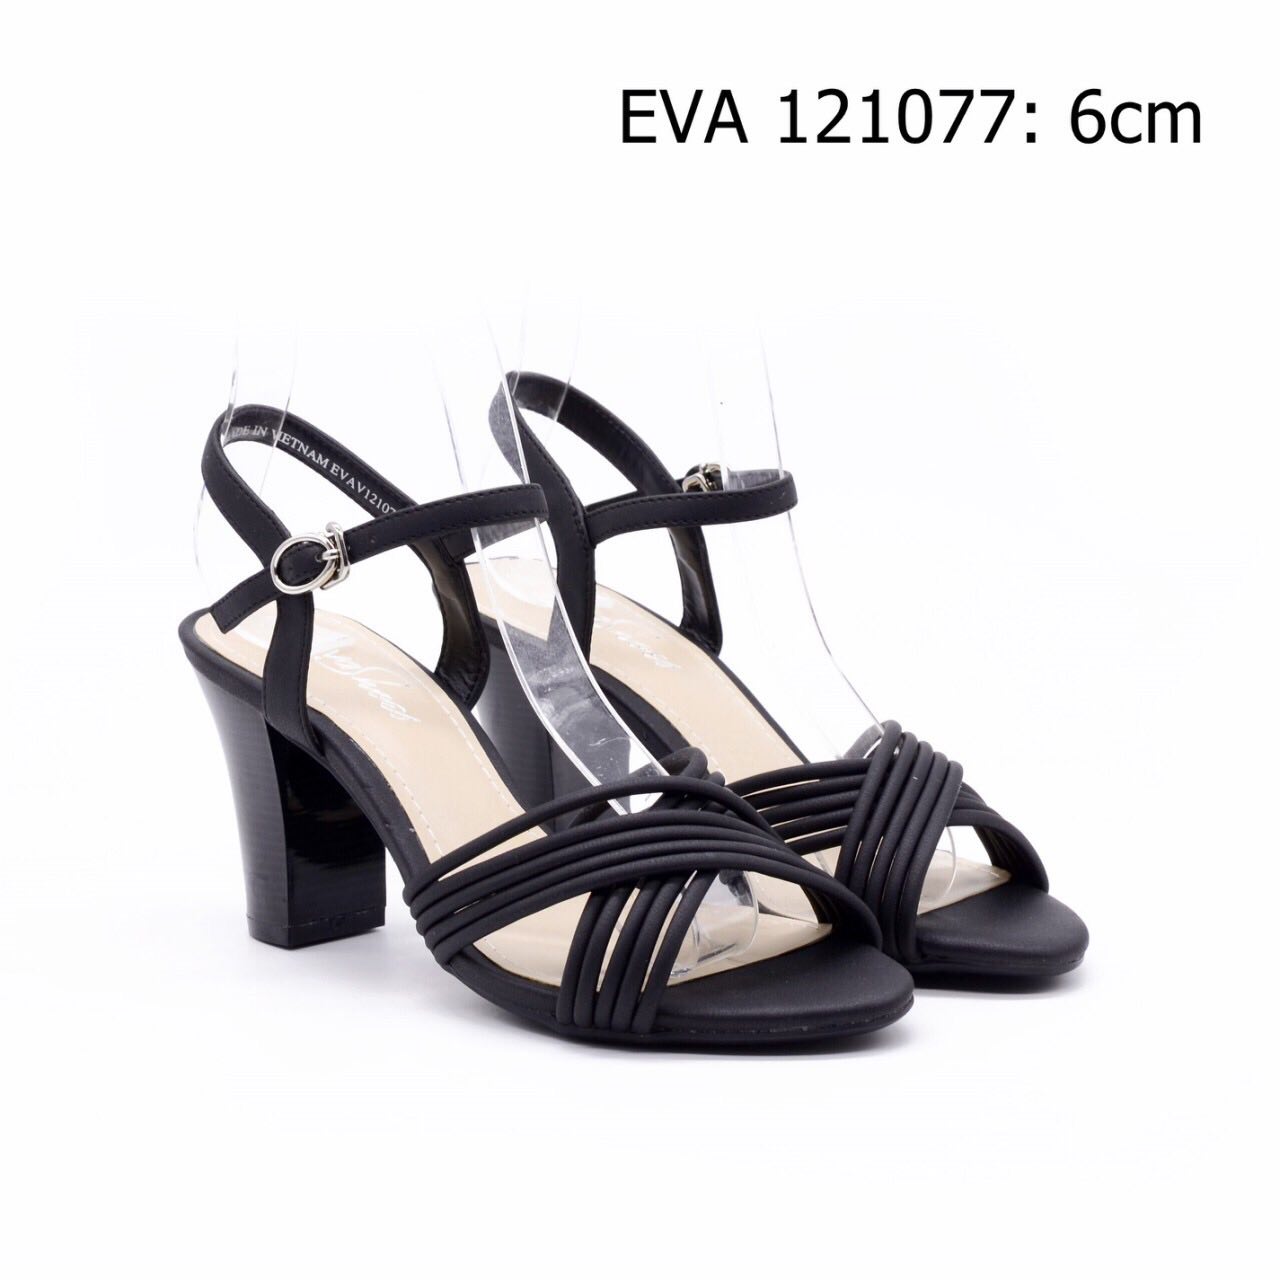 Giày xăng đan quai chéo EVA121077 mang lại vẻ nữ tính cho phái đẹp.